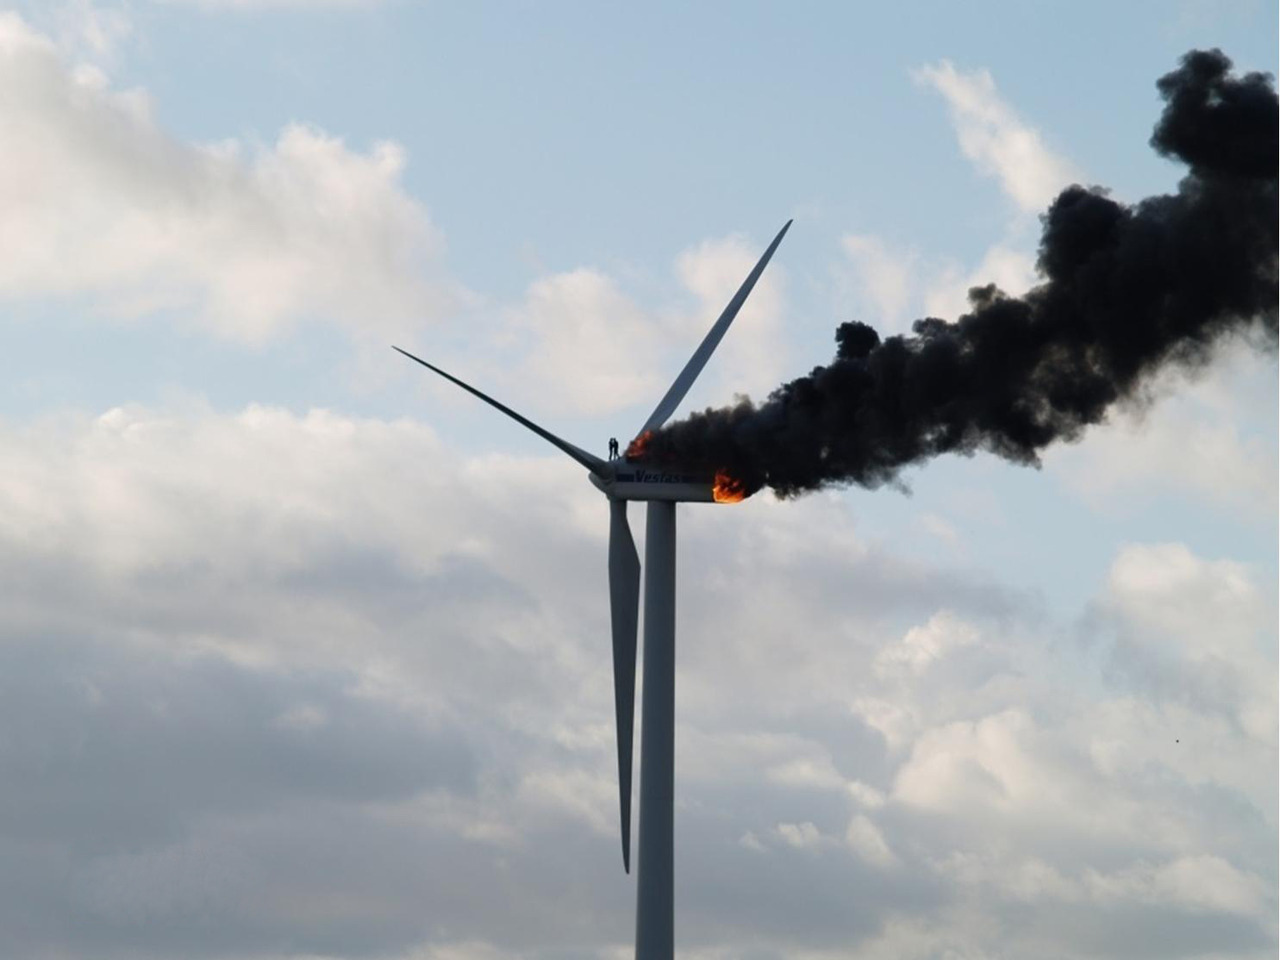 Two engineers hug before they died atop a fiery wind turbine. Ooltgensplaat, Holland 11-06-2013